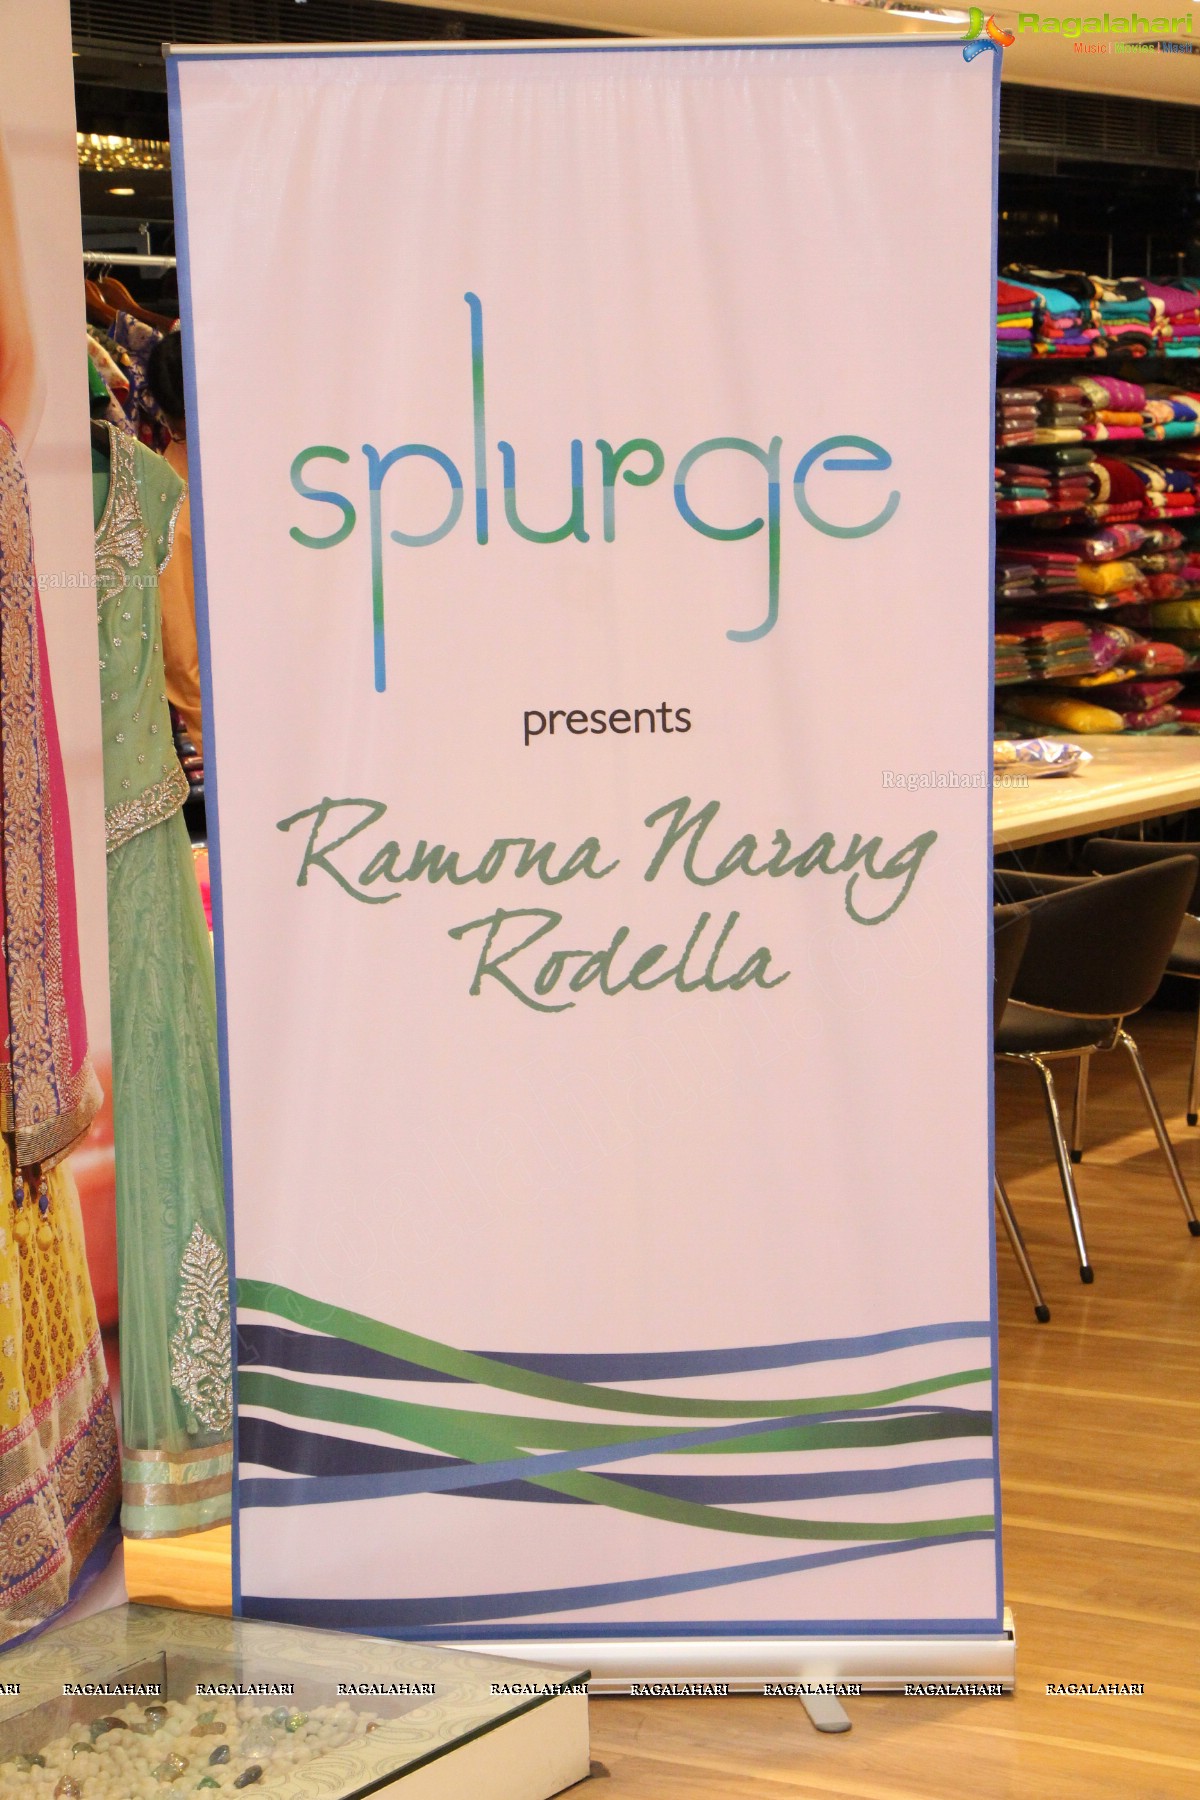 Splurge presents Ramona Narang Rodella at Mebaz, Hyderabad